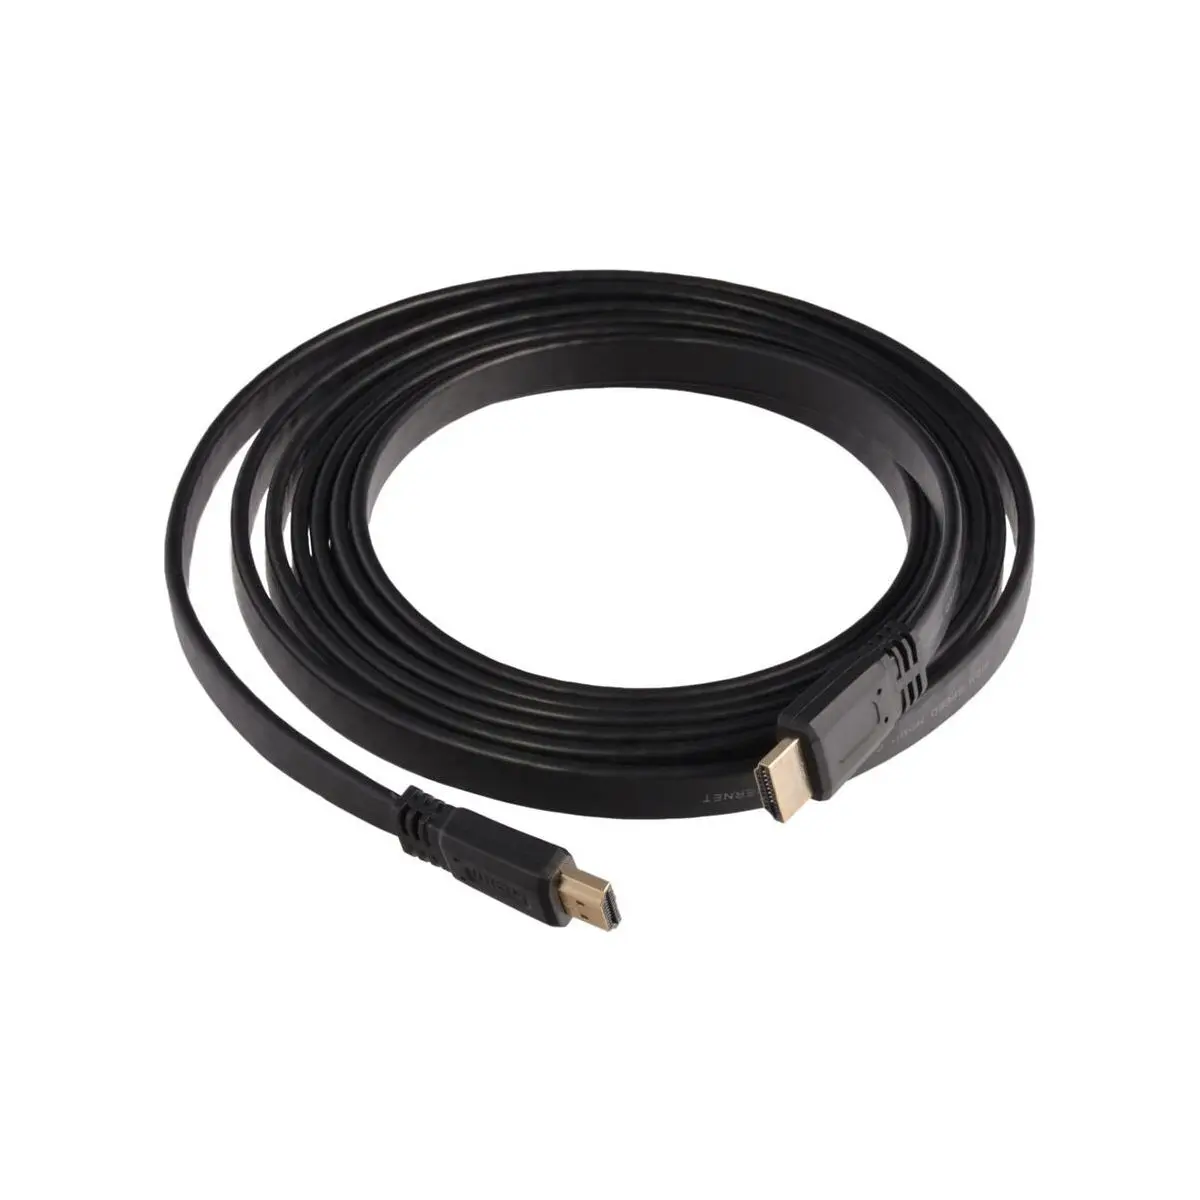 Cablu HDMI, bandă, lungime 2 m